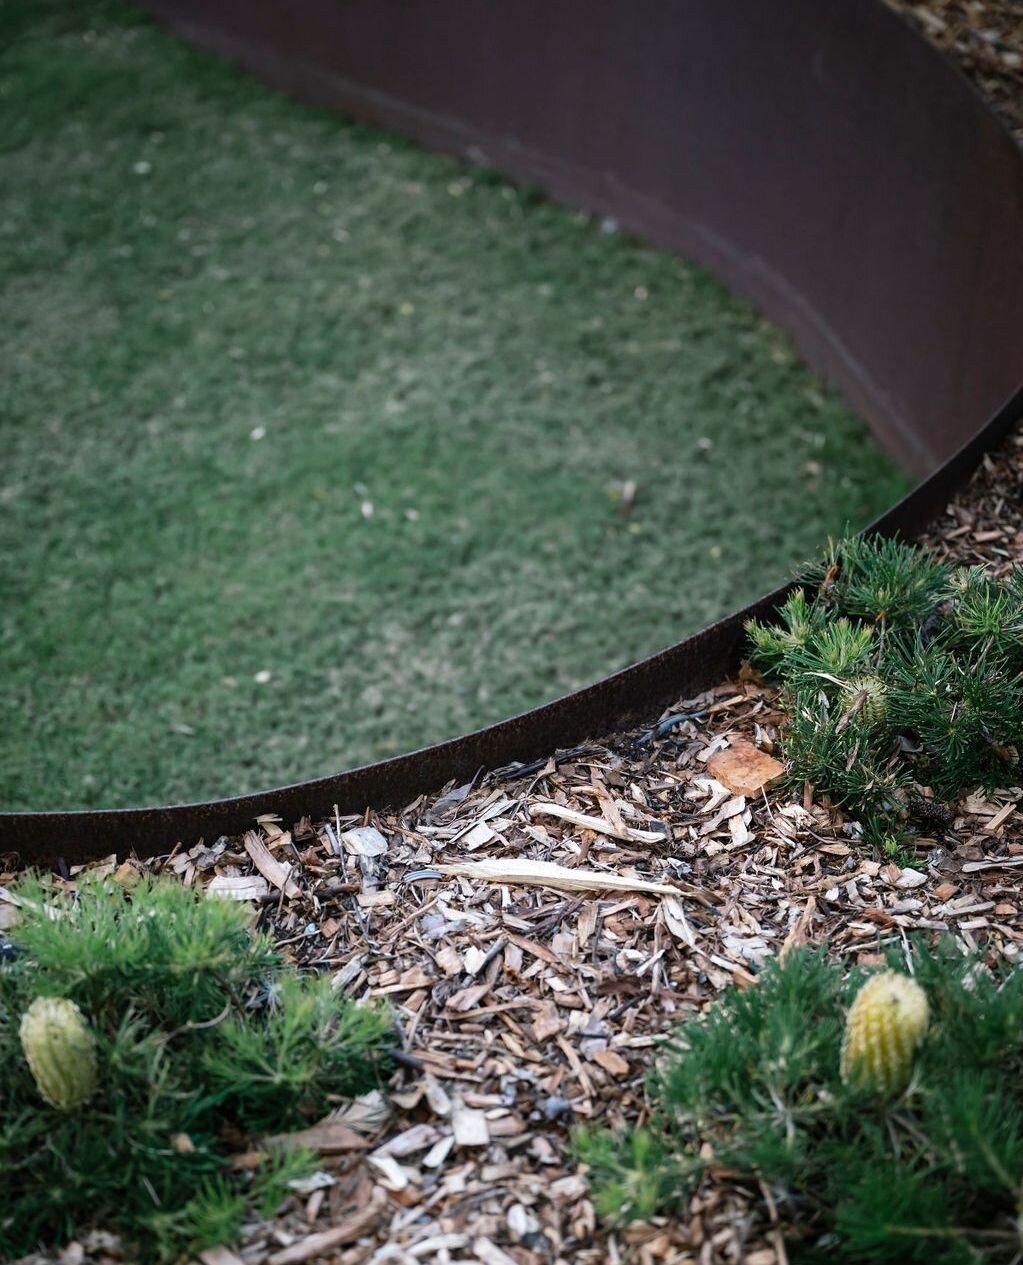 Gorgeous deep steel lawn edging. 👌⁠
⁠
Garden design @juliecrowedesign⁠
📸 @janisalwayshashercamera